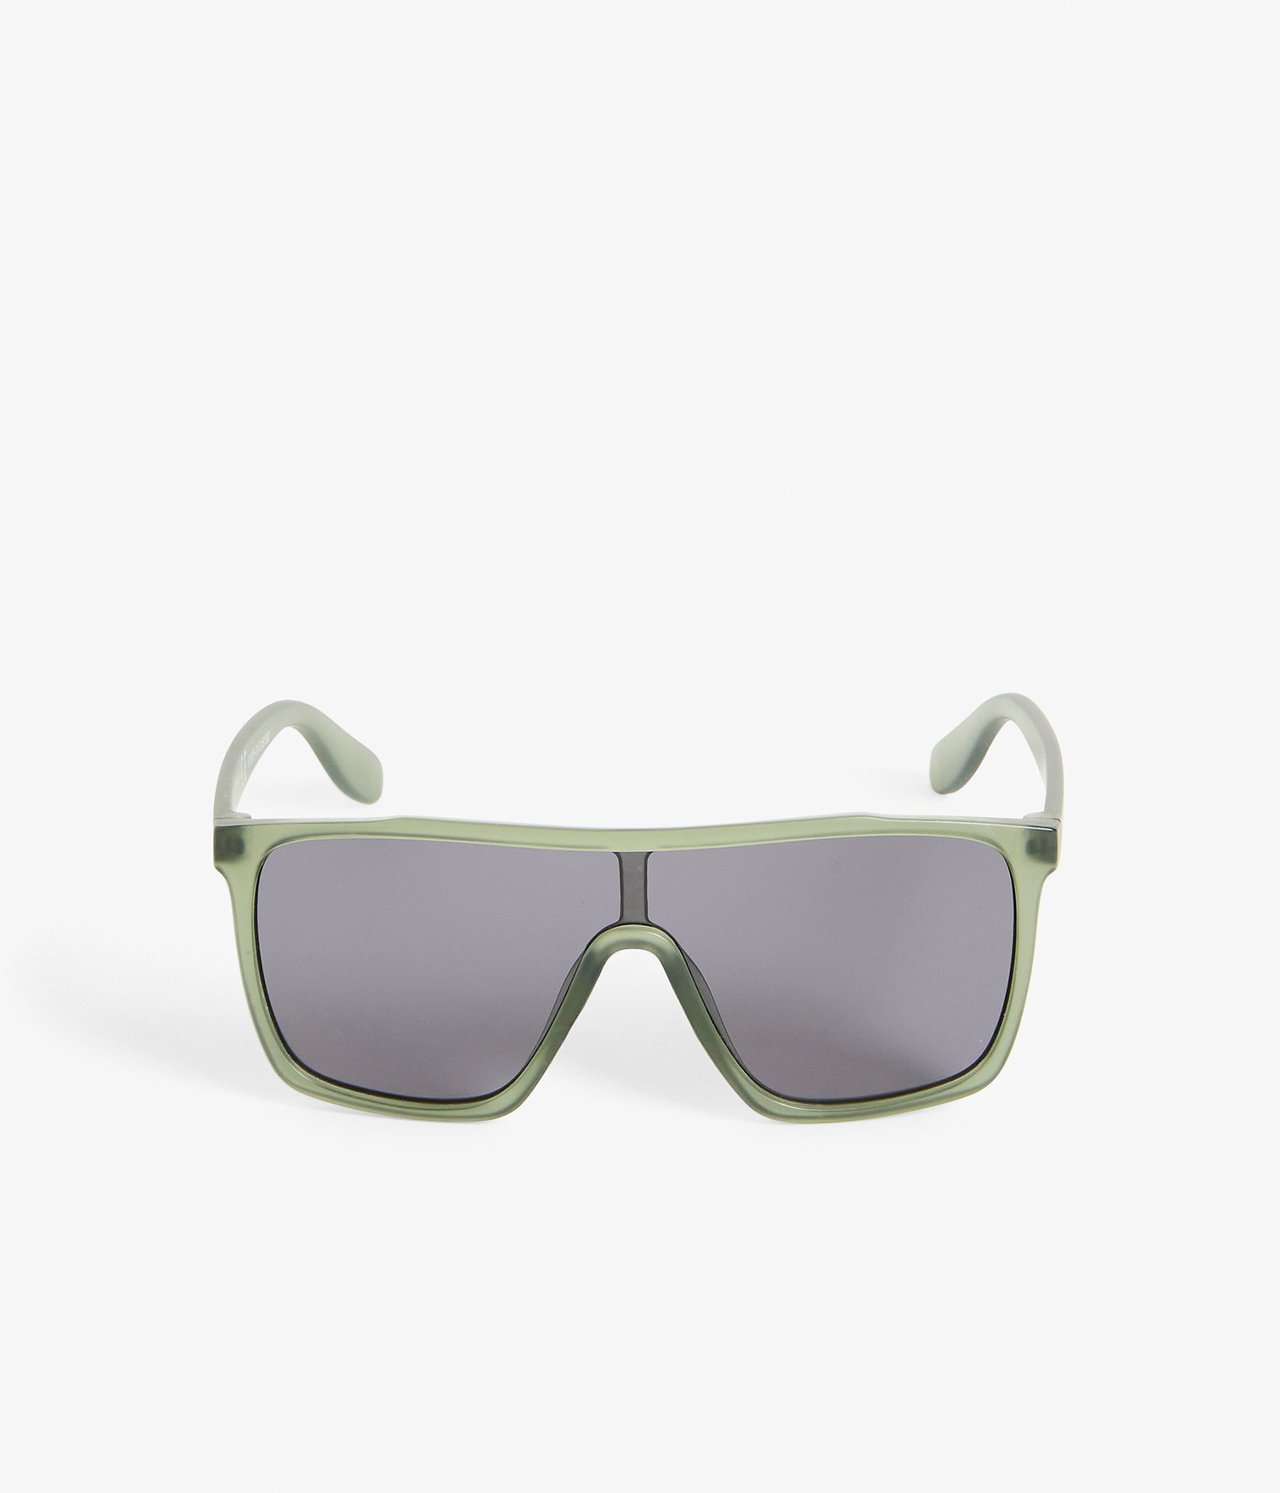 Solbriller barn Grønn - ONE SIZE - 0